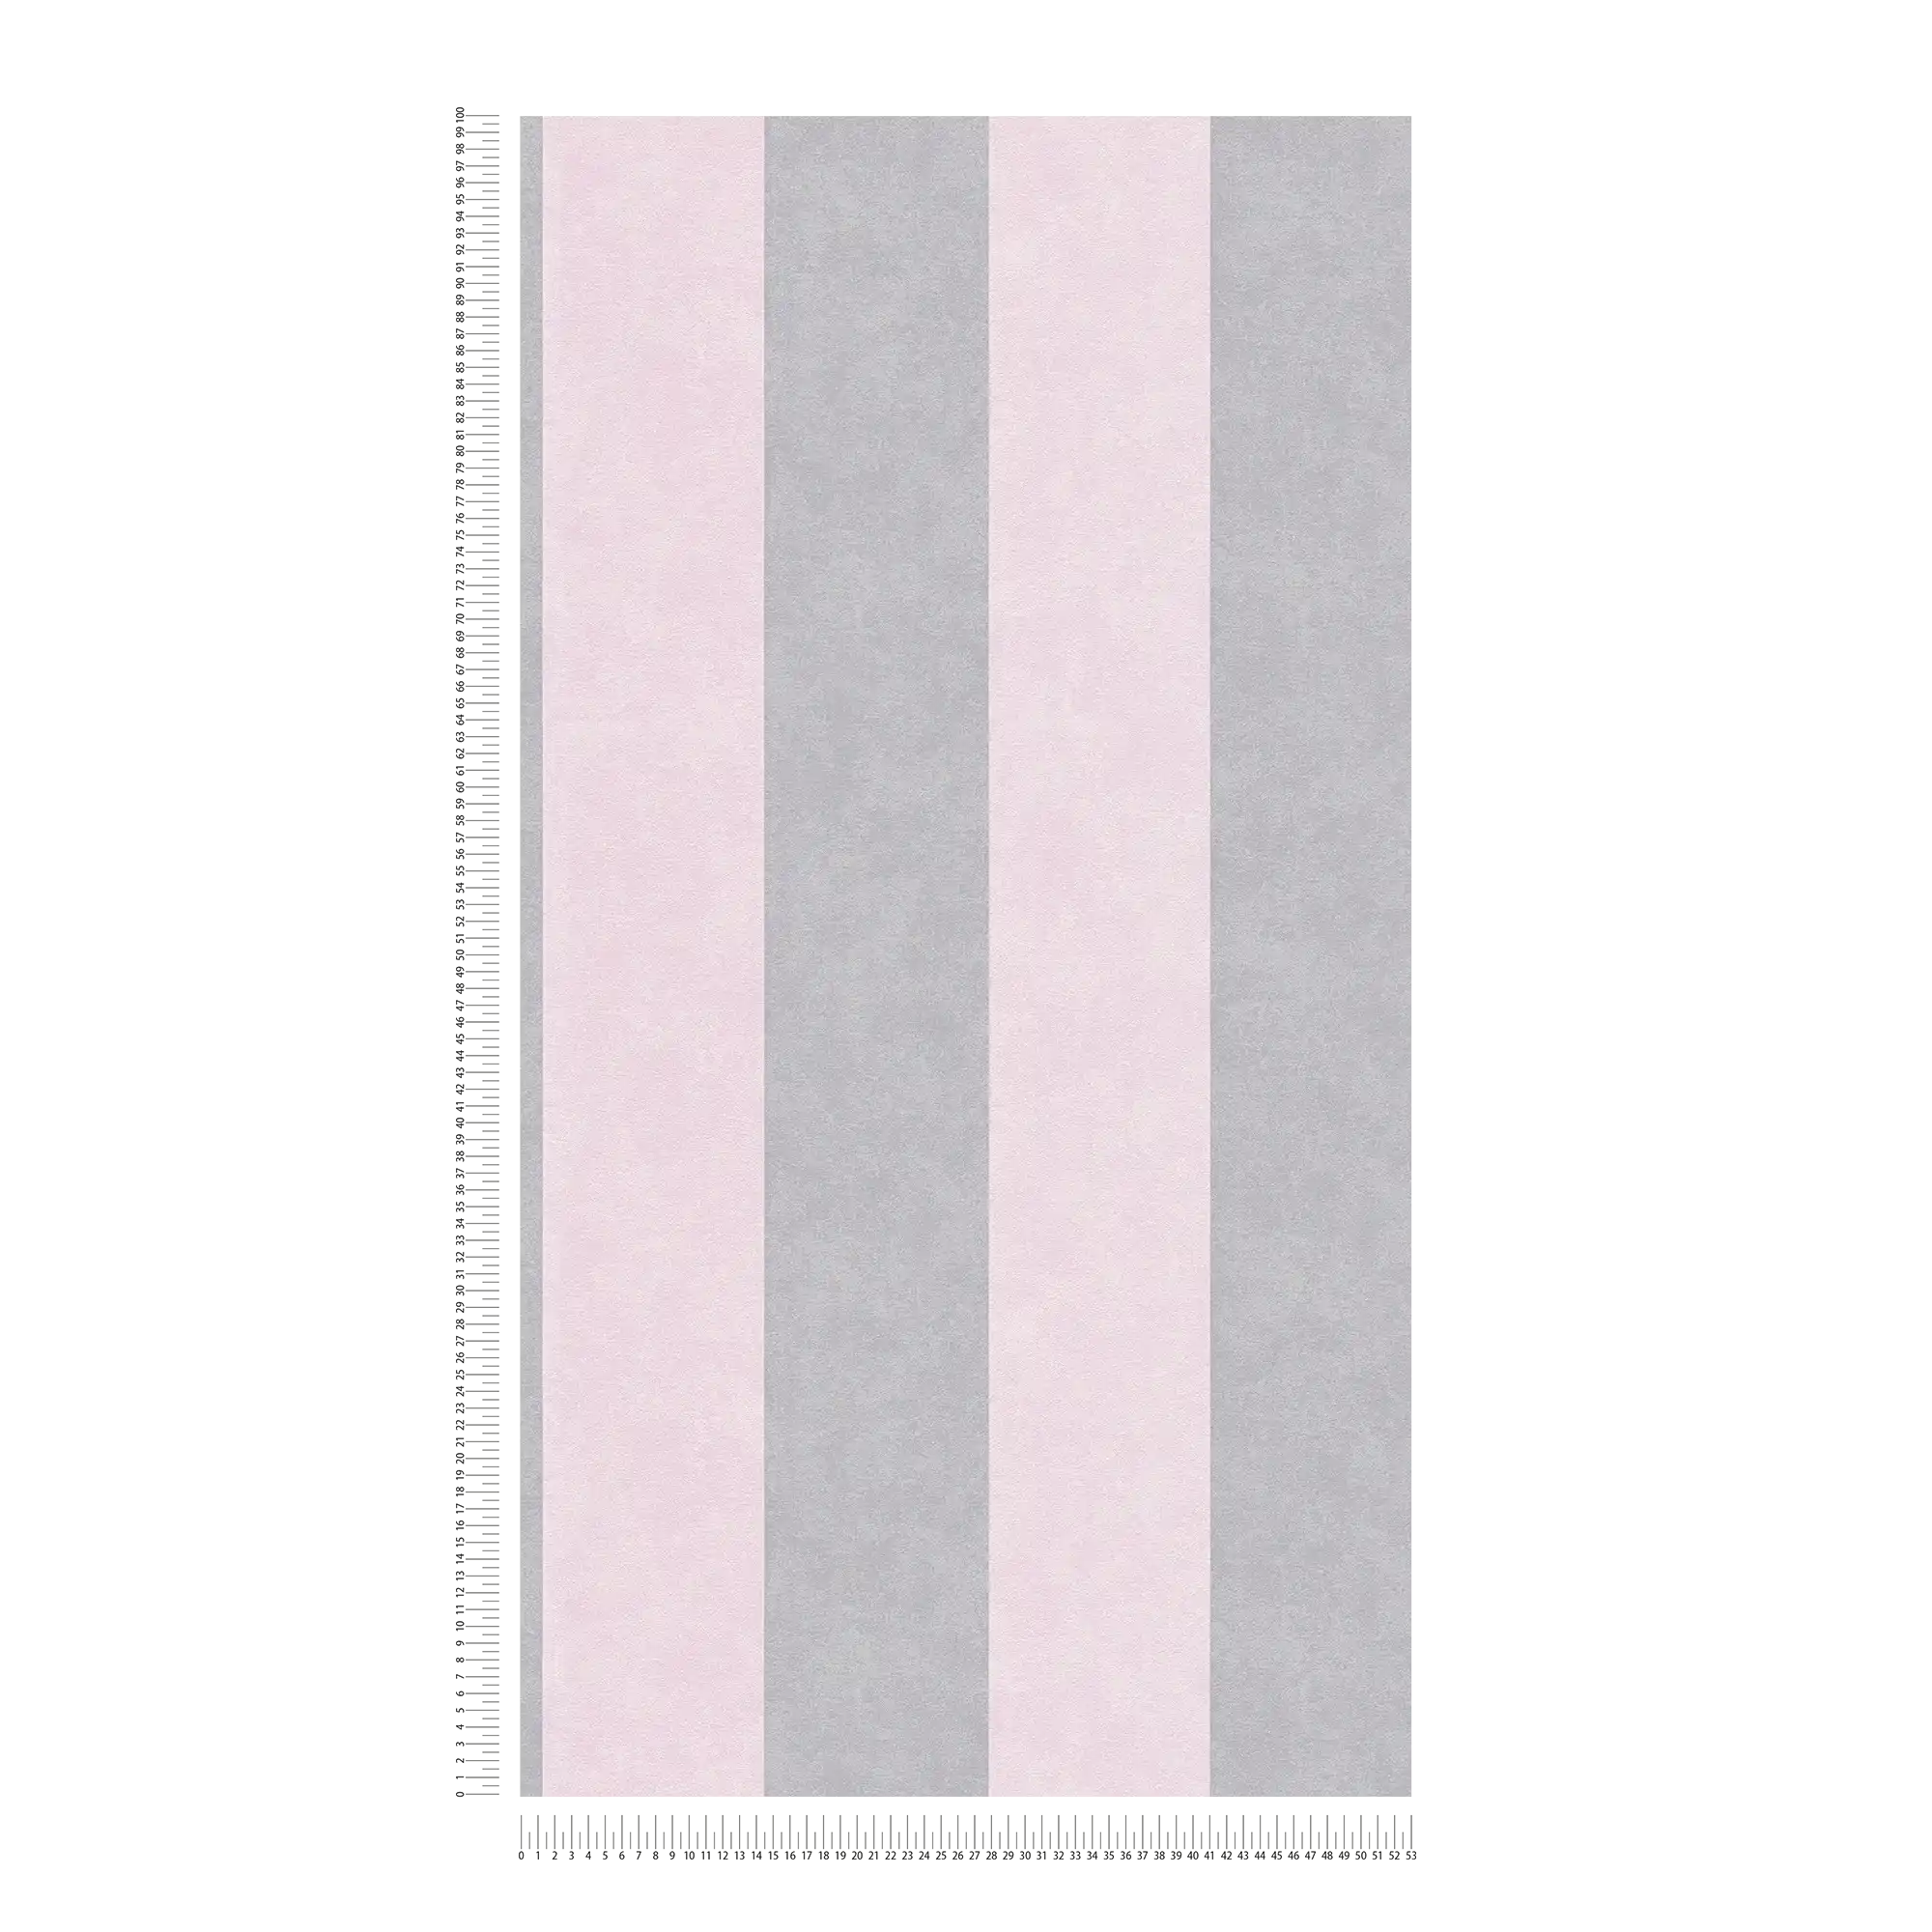             Papel pintado a rayas con textura - gris, rosa
        